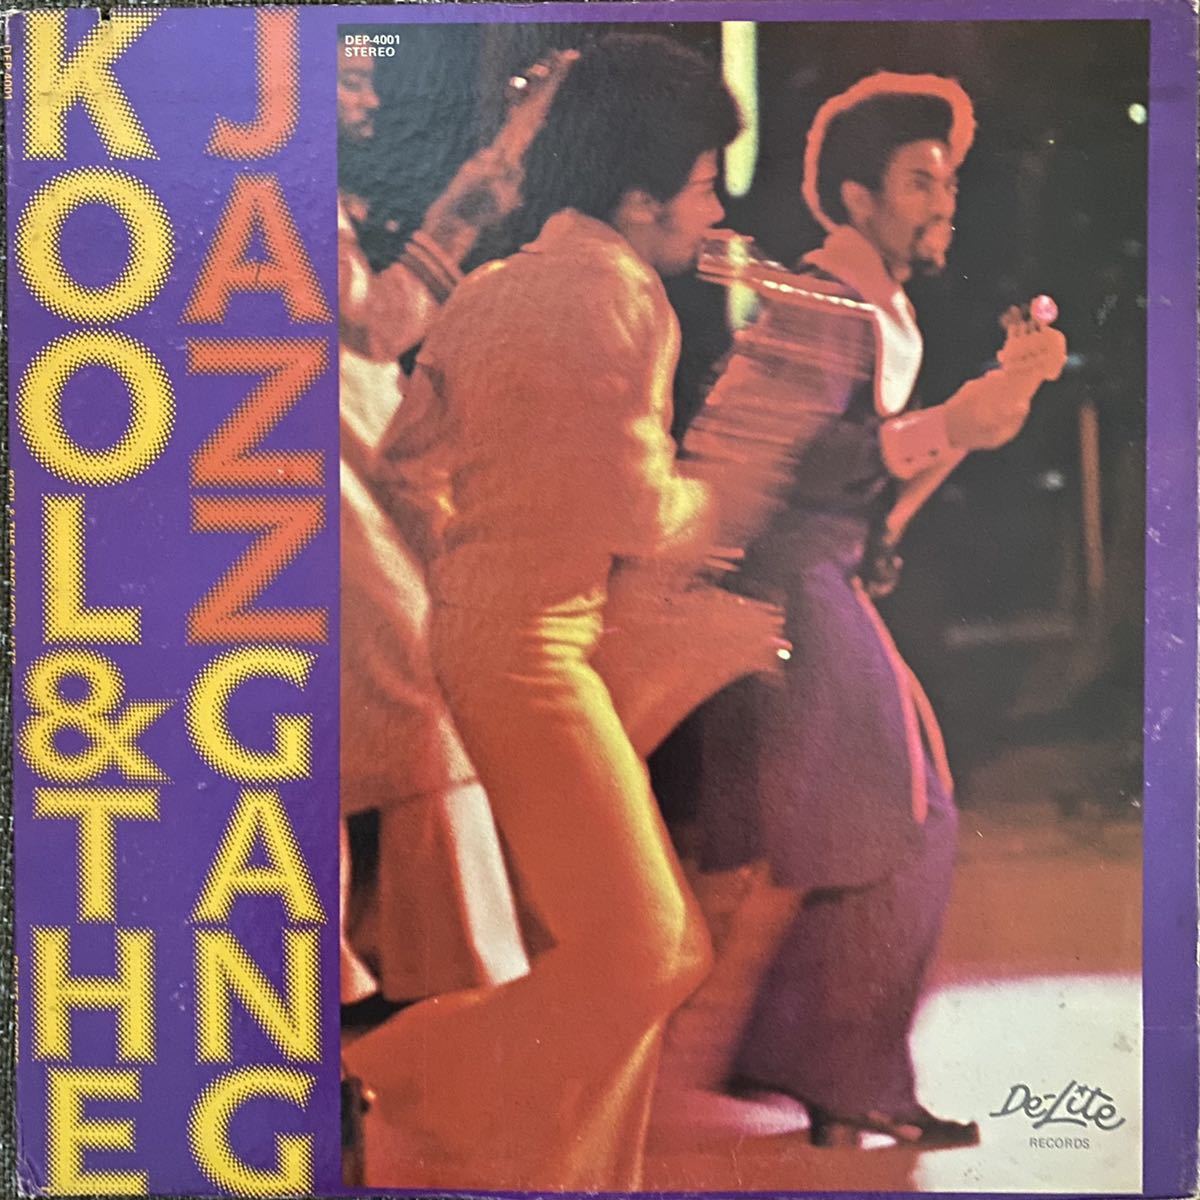 Kool & The Gang - Kool Jazz LP 送料無料